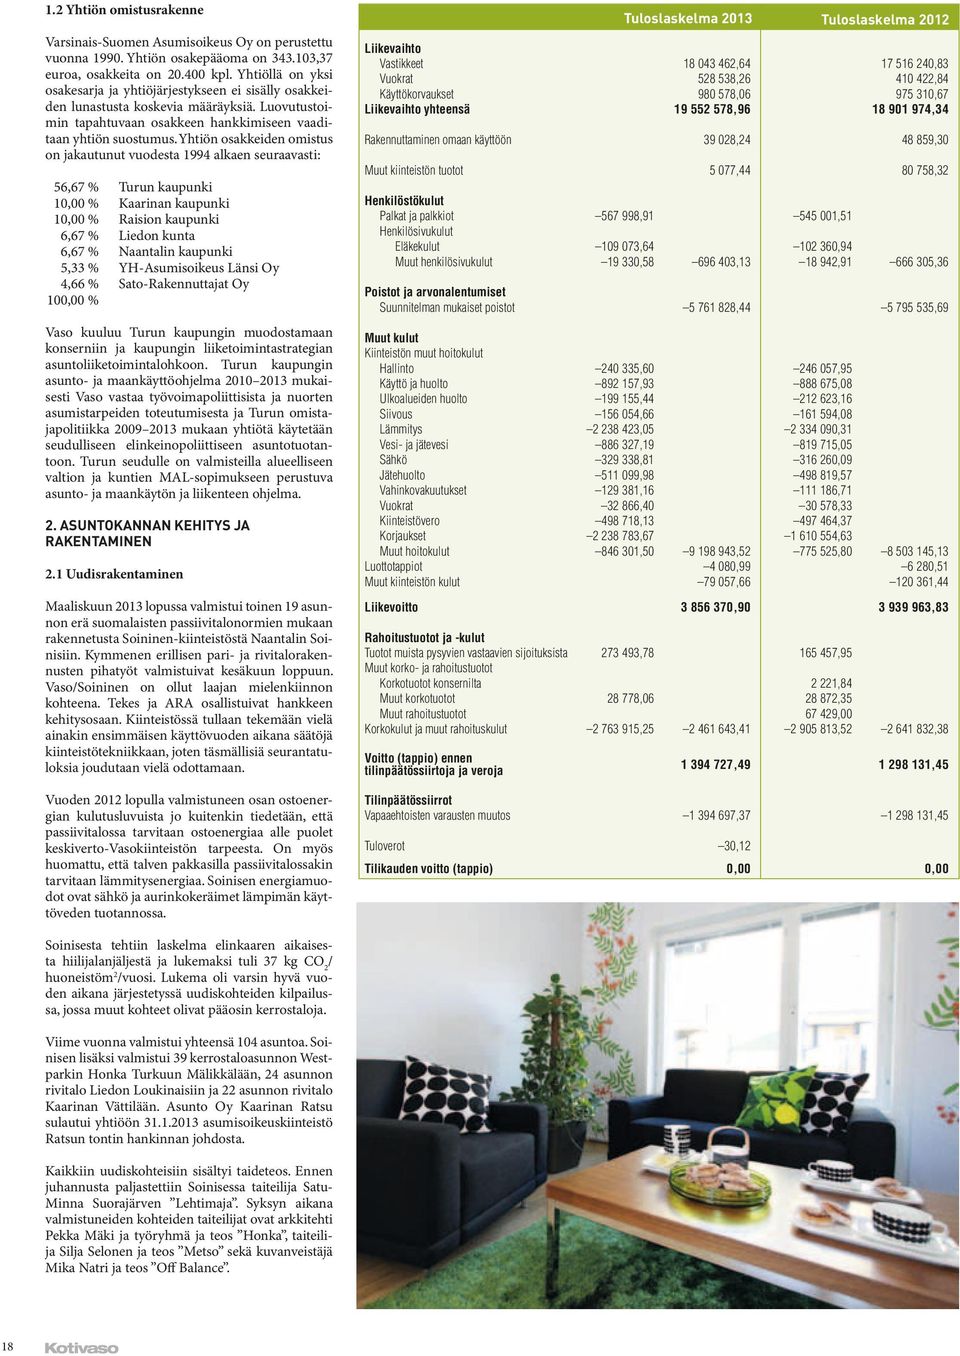 Yhtiön osakkeiden omistus on jakautunut vuodesta 1994 alkaen seuraavasti: 56,67 % Turun kaupunki 10,00 % Kaarinan kaupunki 10,00 % Raision kaupunki 6,67 % Liedon kunta 6,67 % Naantalin kaupunki 5,33